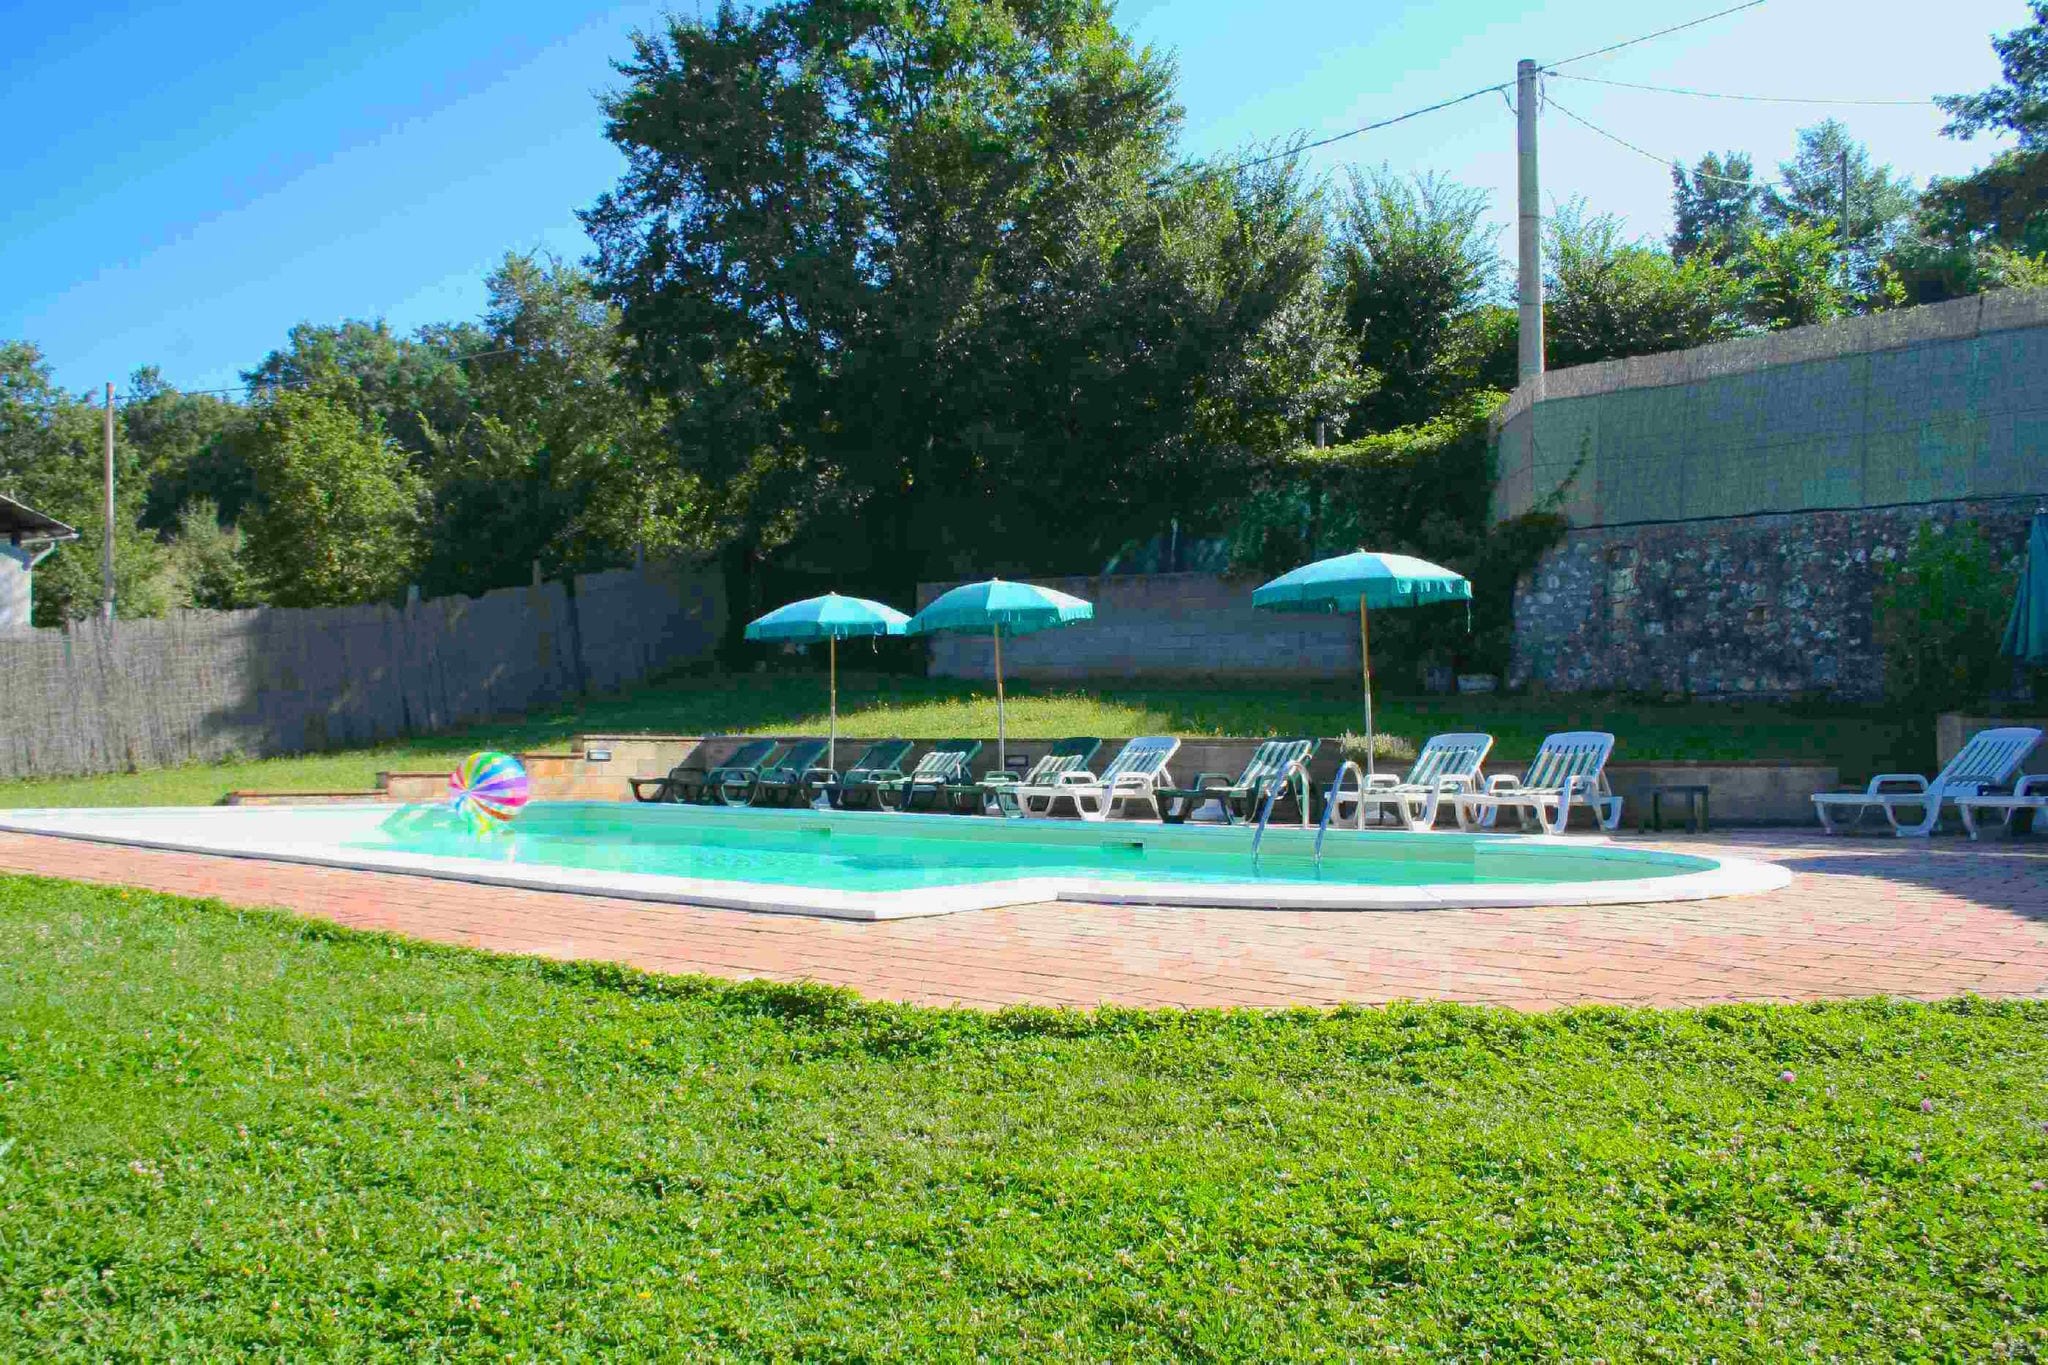 Maison de vacances calme avec piscine à Sellano